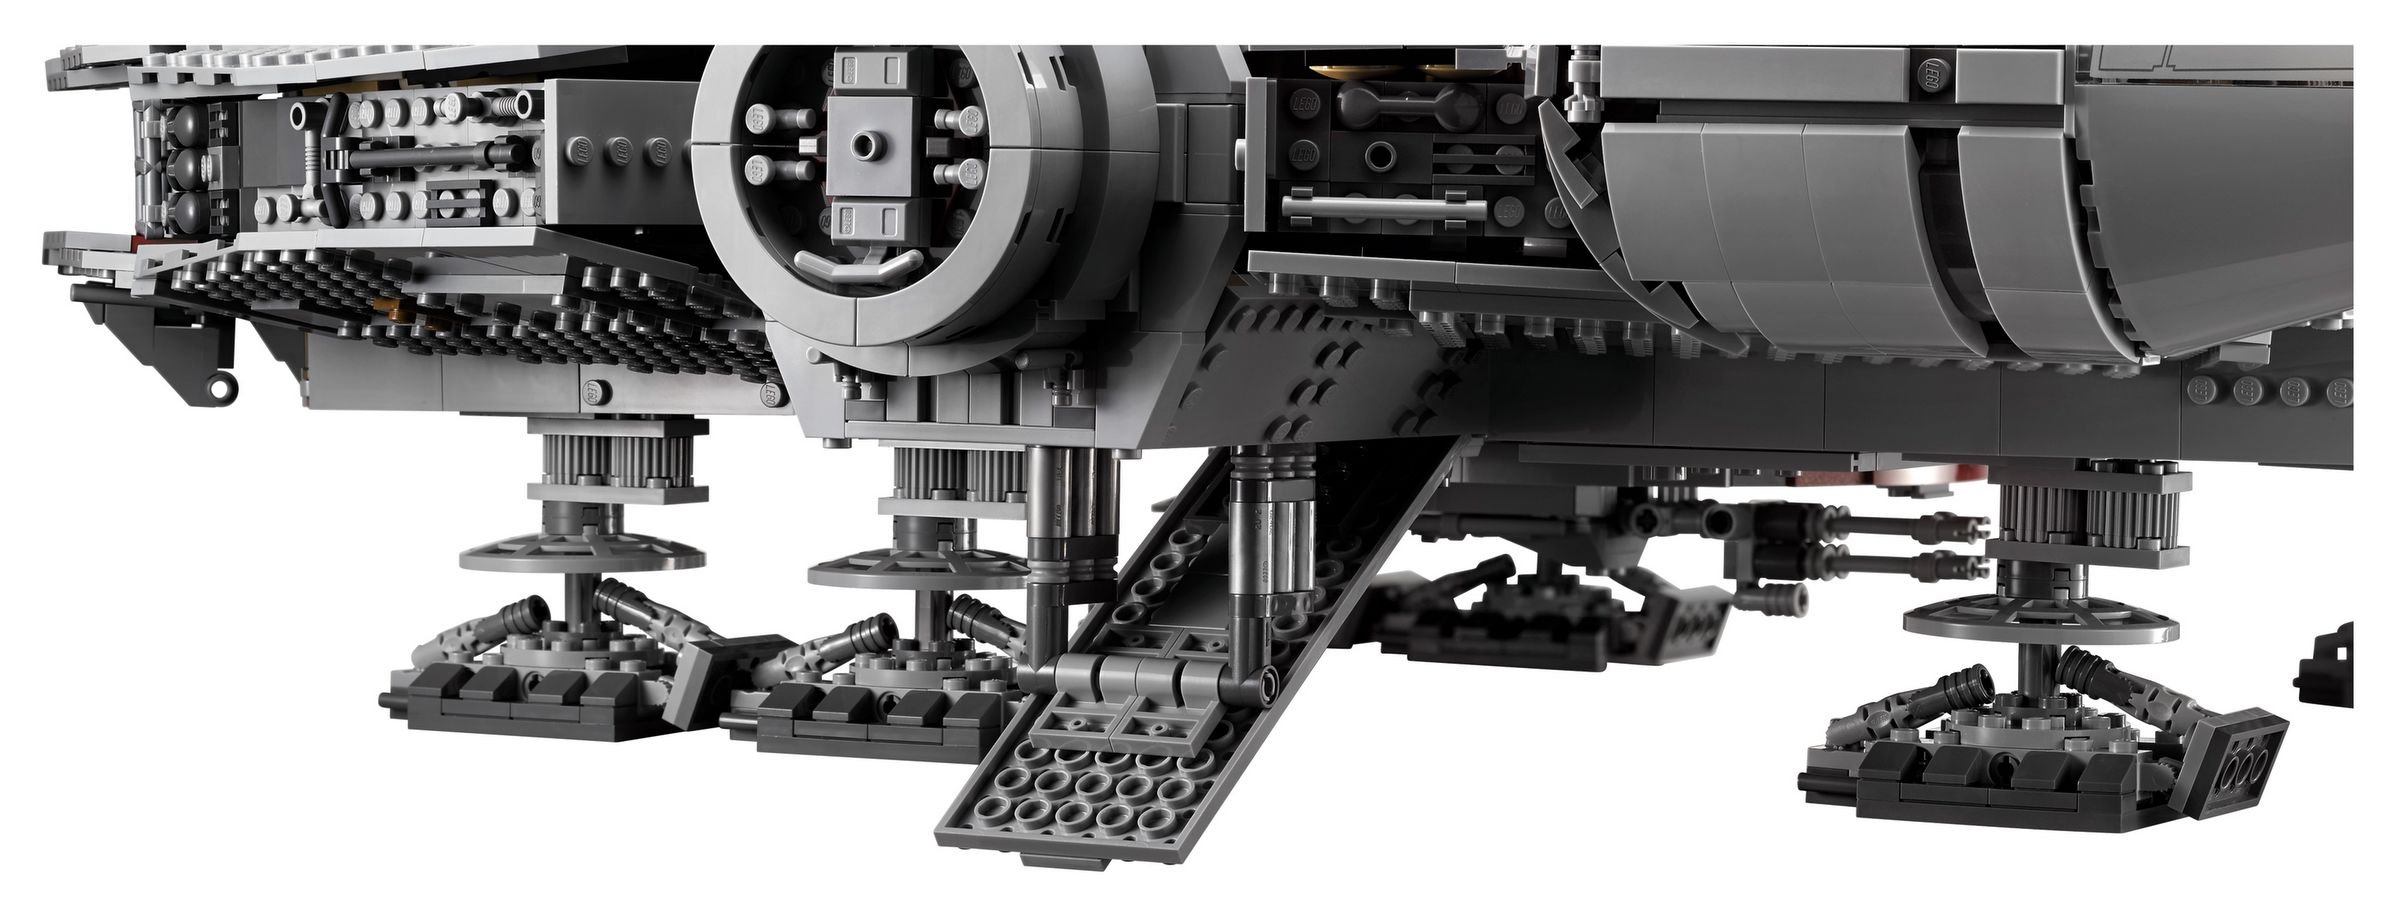 LEGO Star Wars 75192 Millennium Falcon™ LEGO_75192_alt8.jpg